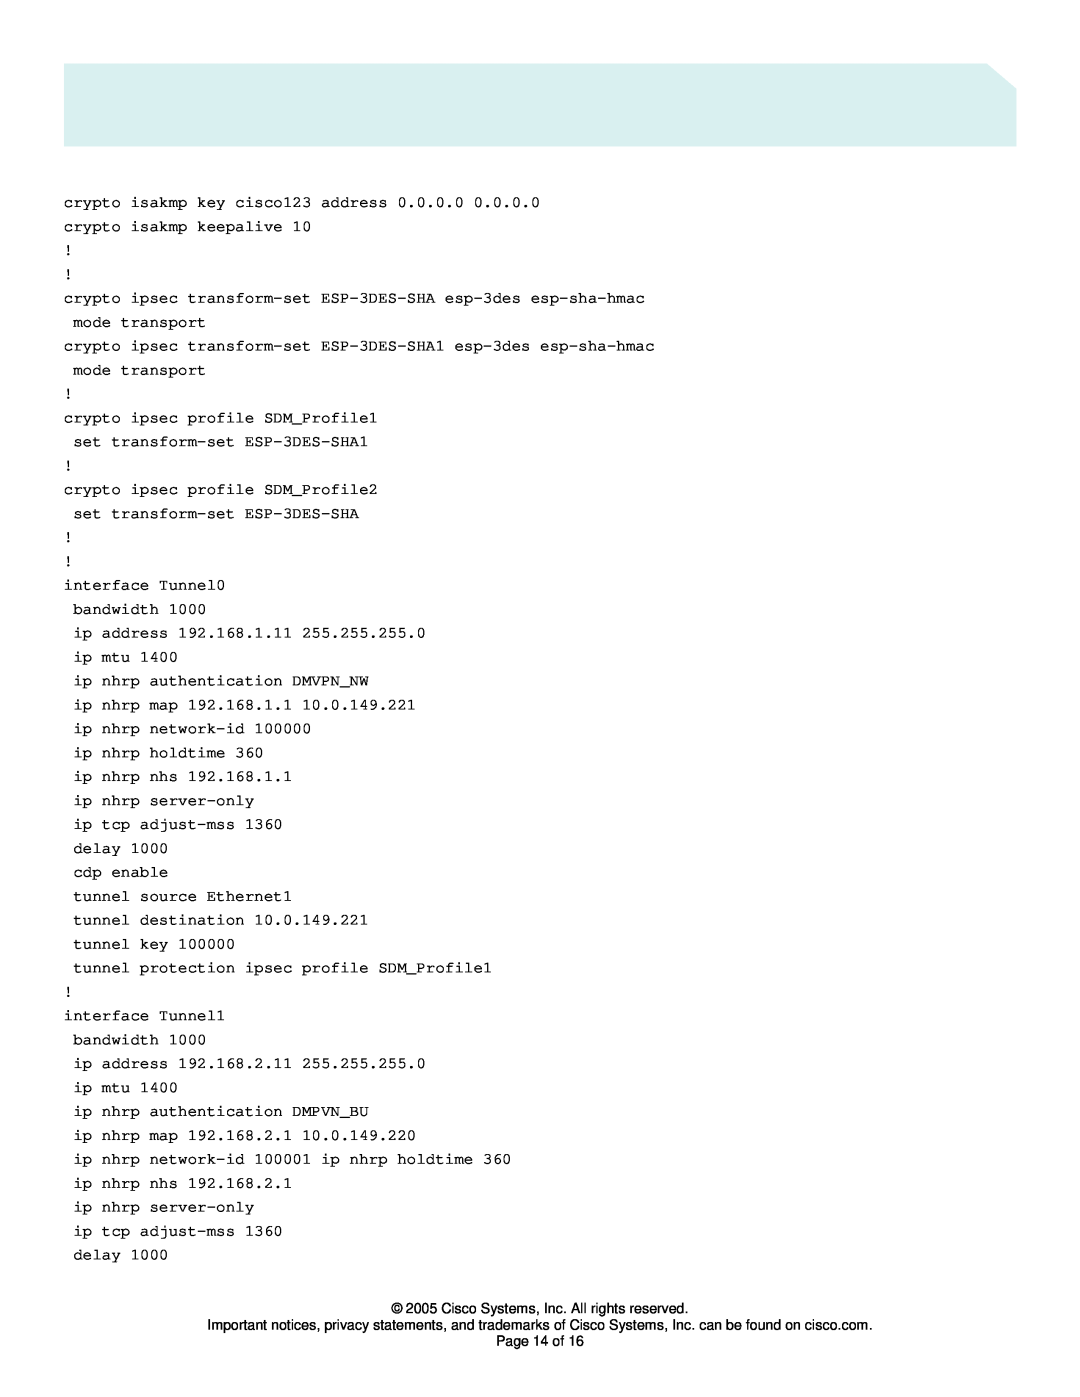 Cisco Systems 3745, 831, 3725, 1751 manual crypto ipsec profile SDMProfile1 set transform-set ESP-3DES-SHA1 